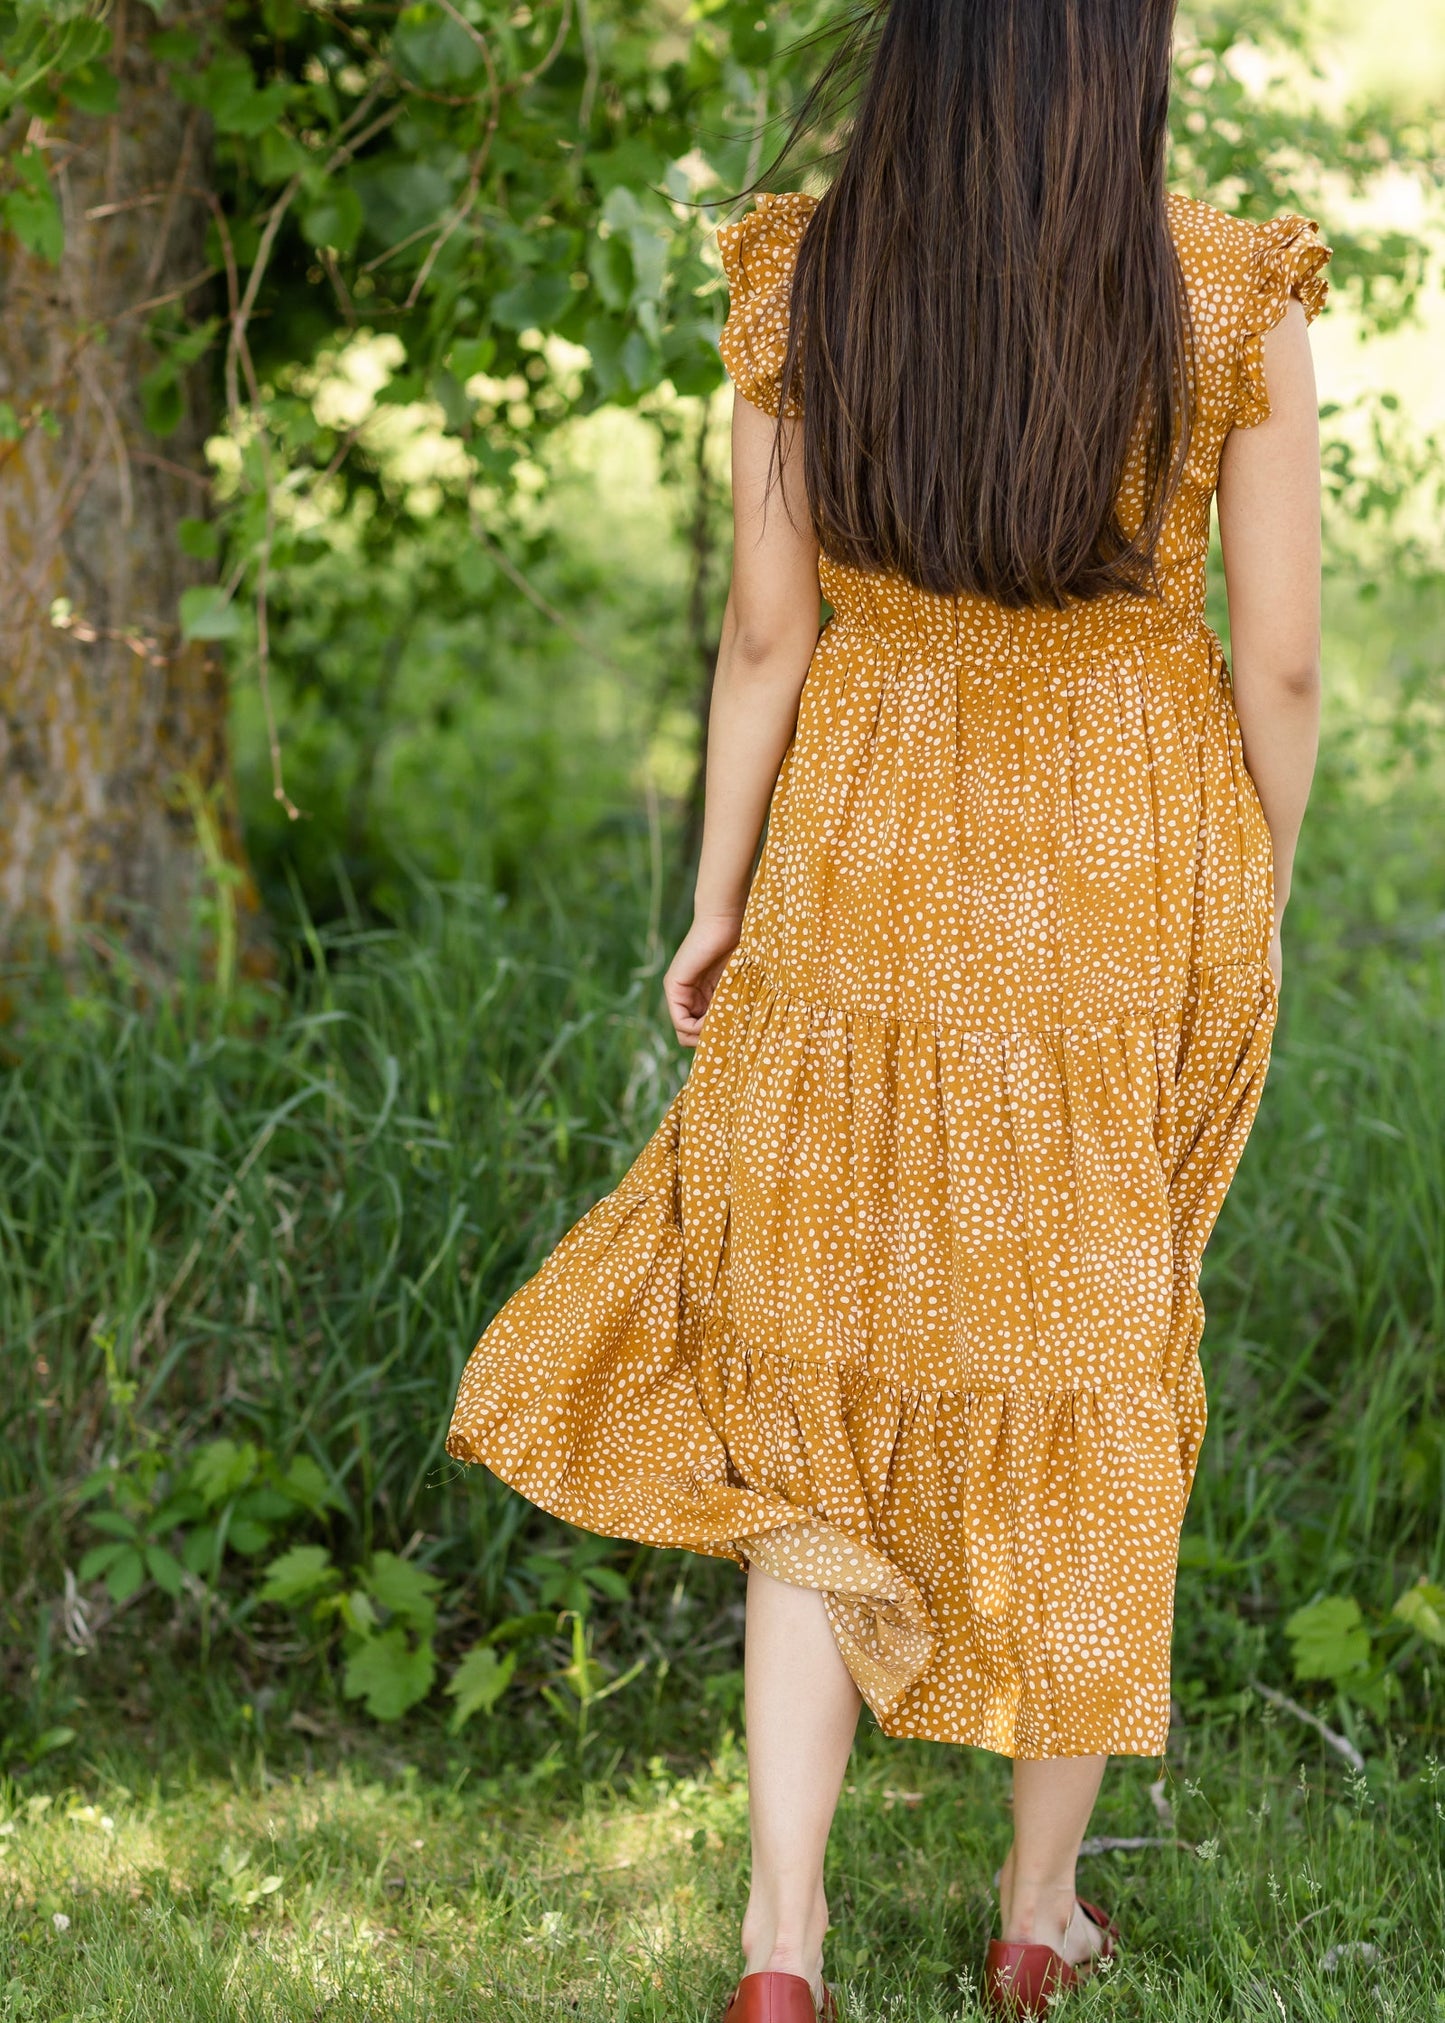 Smocked Bodice Flutter Sleeve Dress - FINAL SALE Dresses